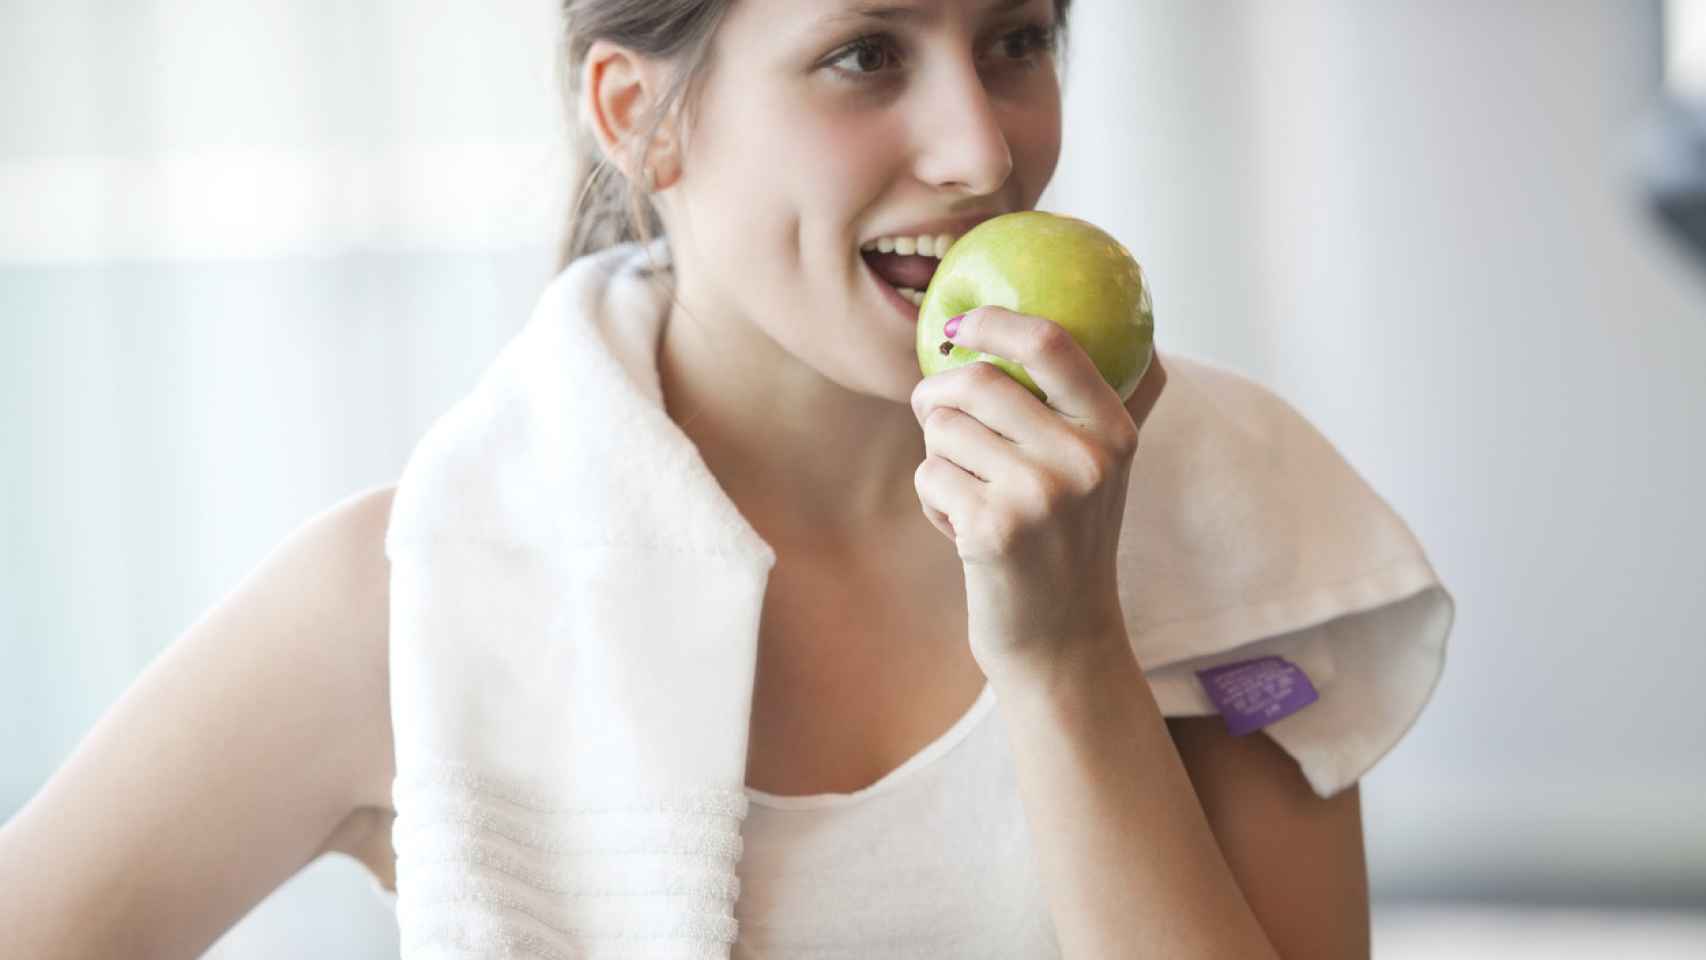 Mujer comiendo manzana en una ruptura de ejercicios. Fuente: iStock.